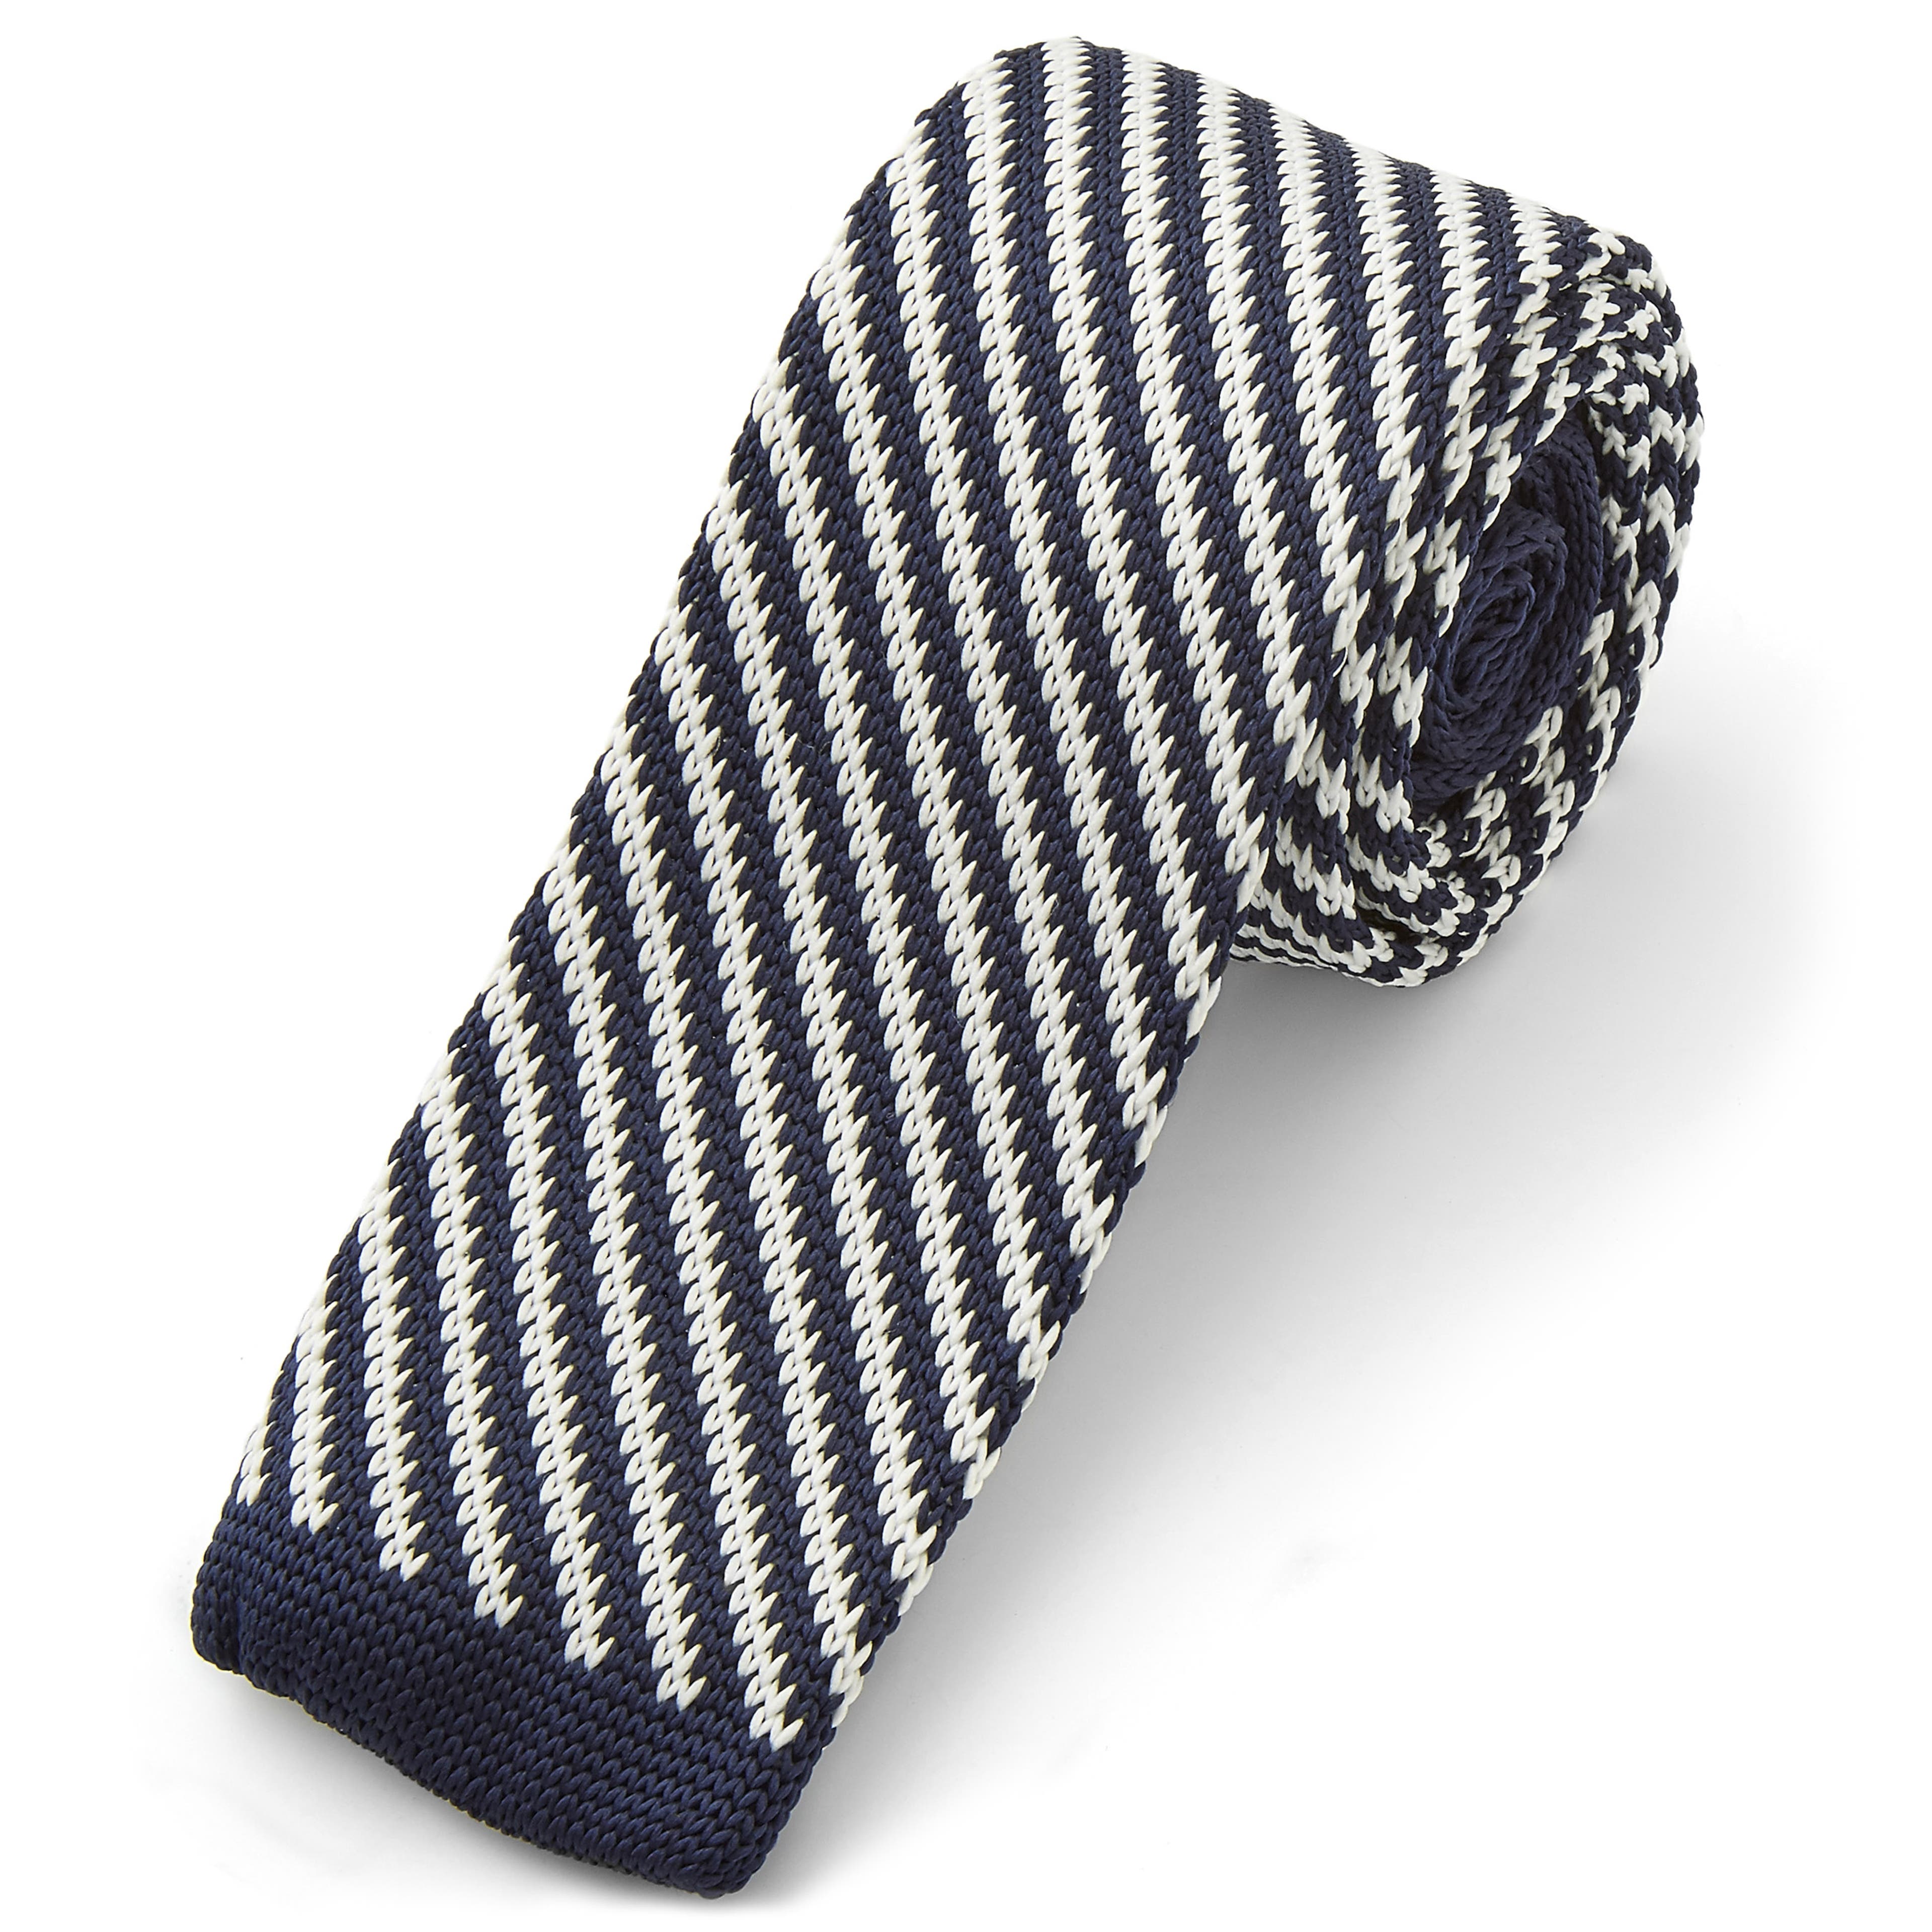 Pletená kravata s modro-bielymi diagonálnymi prúžkami